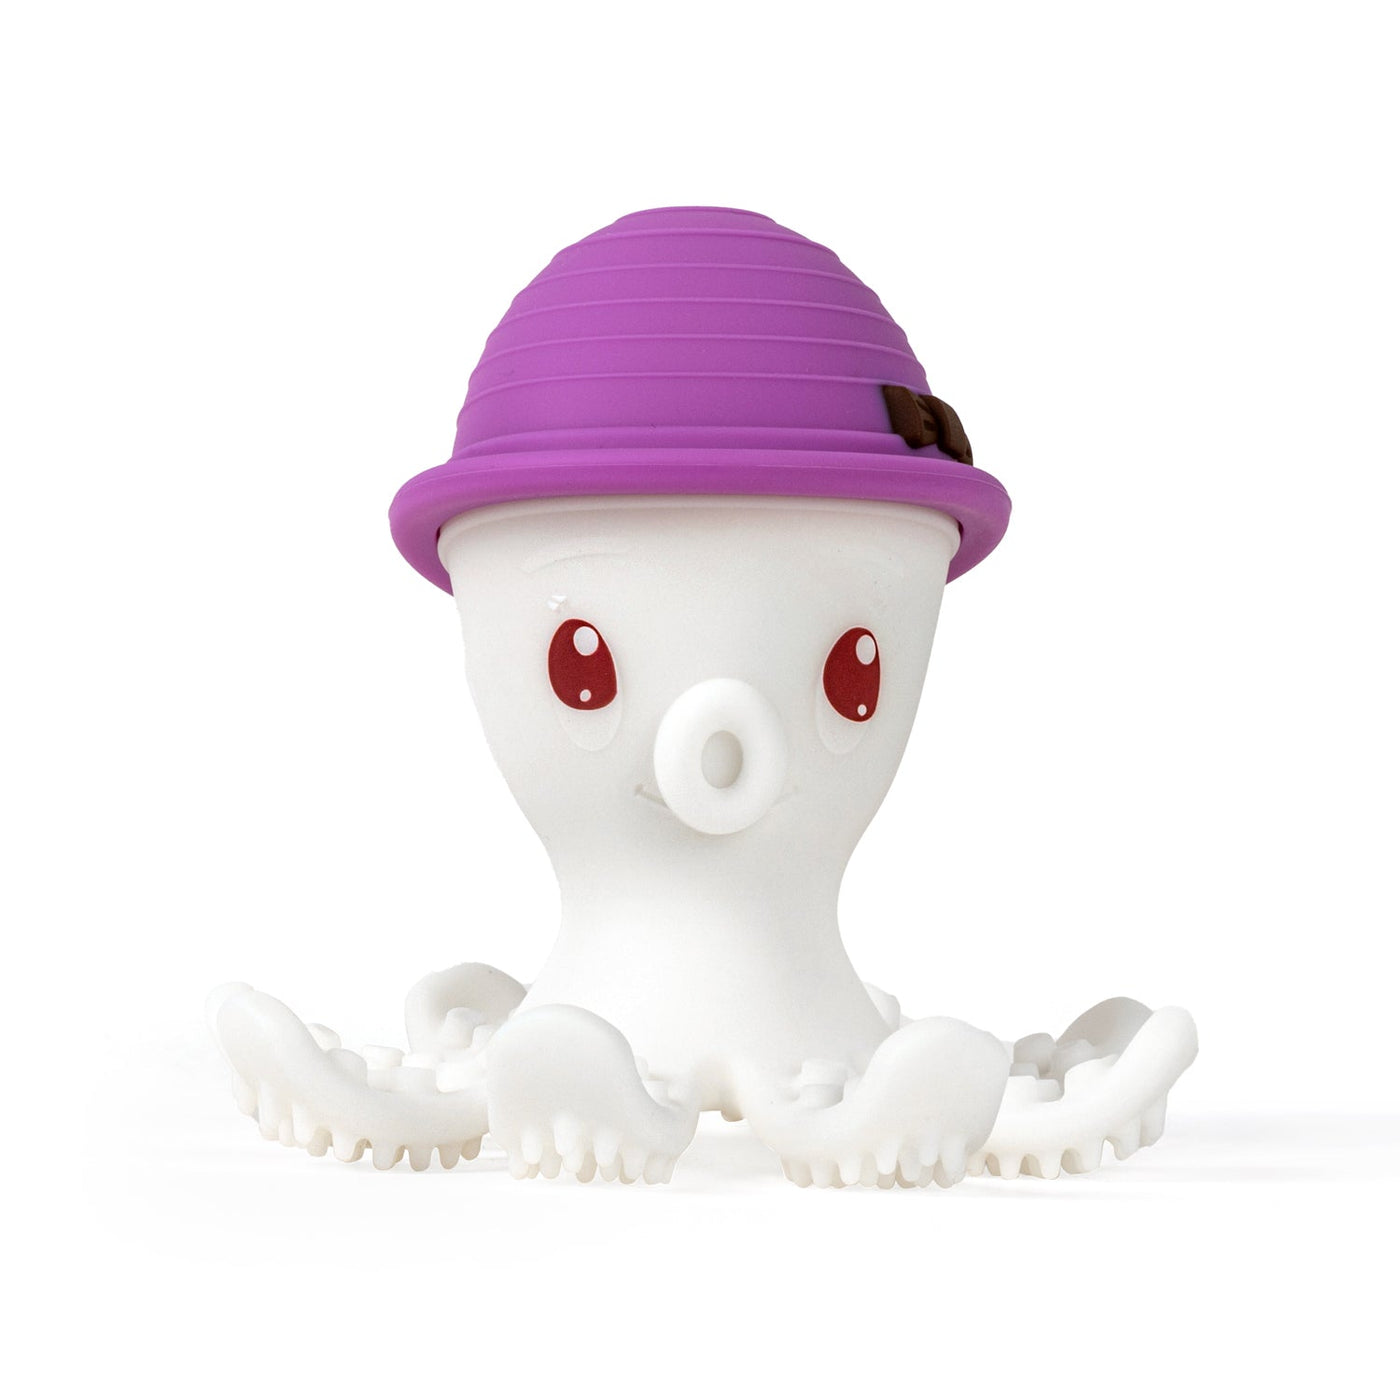 Gryzak Mombella Ollie Octopus dla dziecka w wieku 5 miesięcy, oryginalny design